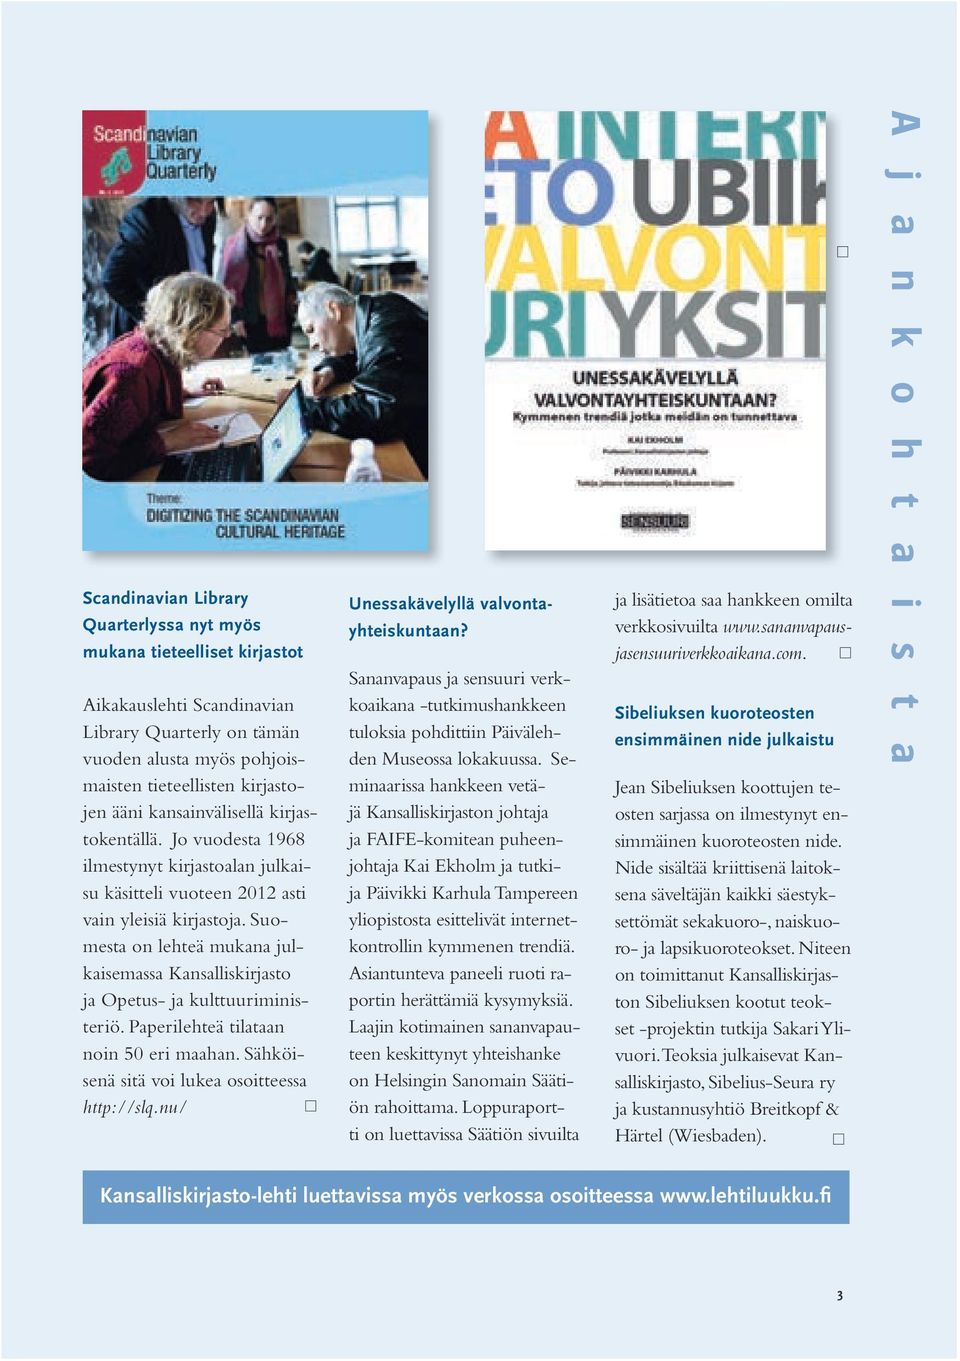 Suomesta on lehteä mukana julkaisemassa Kansalliskirjasto ja Opetus- ja kulttuuriministeriö. Paperilehteä tilataan noin 50 eri maahan. Sähköisenä sitä voi lukea osoitteessa http://slq.